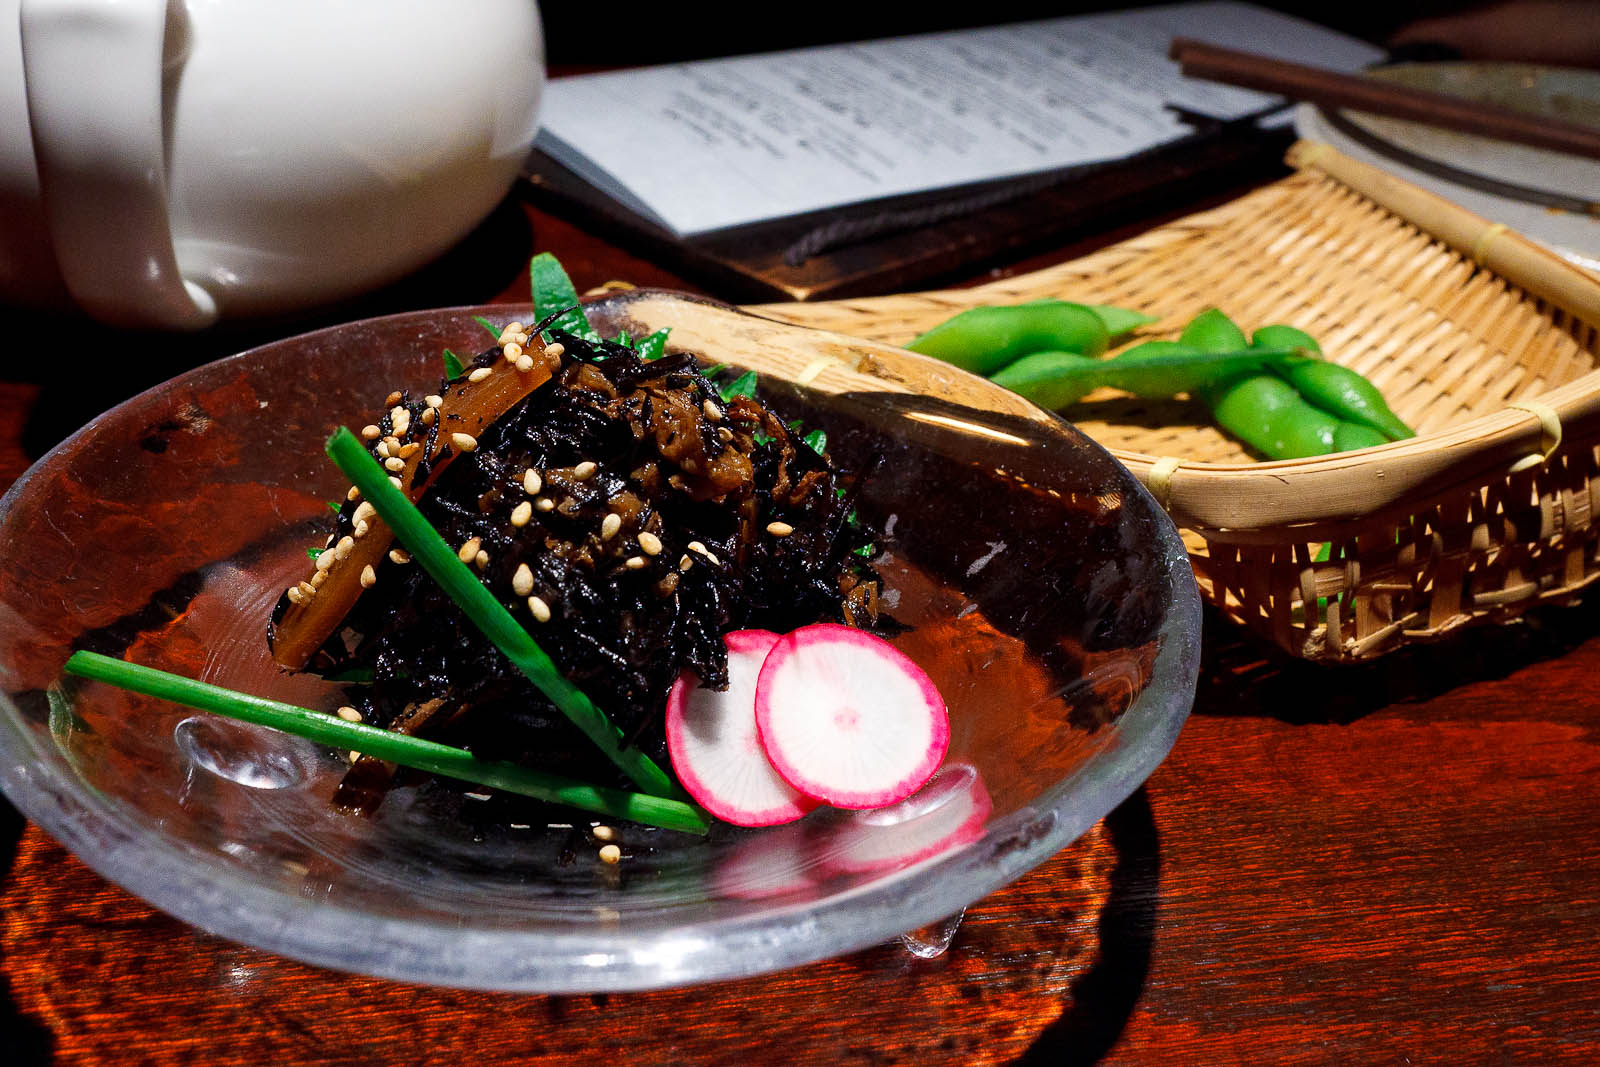 Hijiki: Japanese seaweed simmered in sweet sake and soy sauce ($4.95)